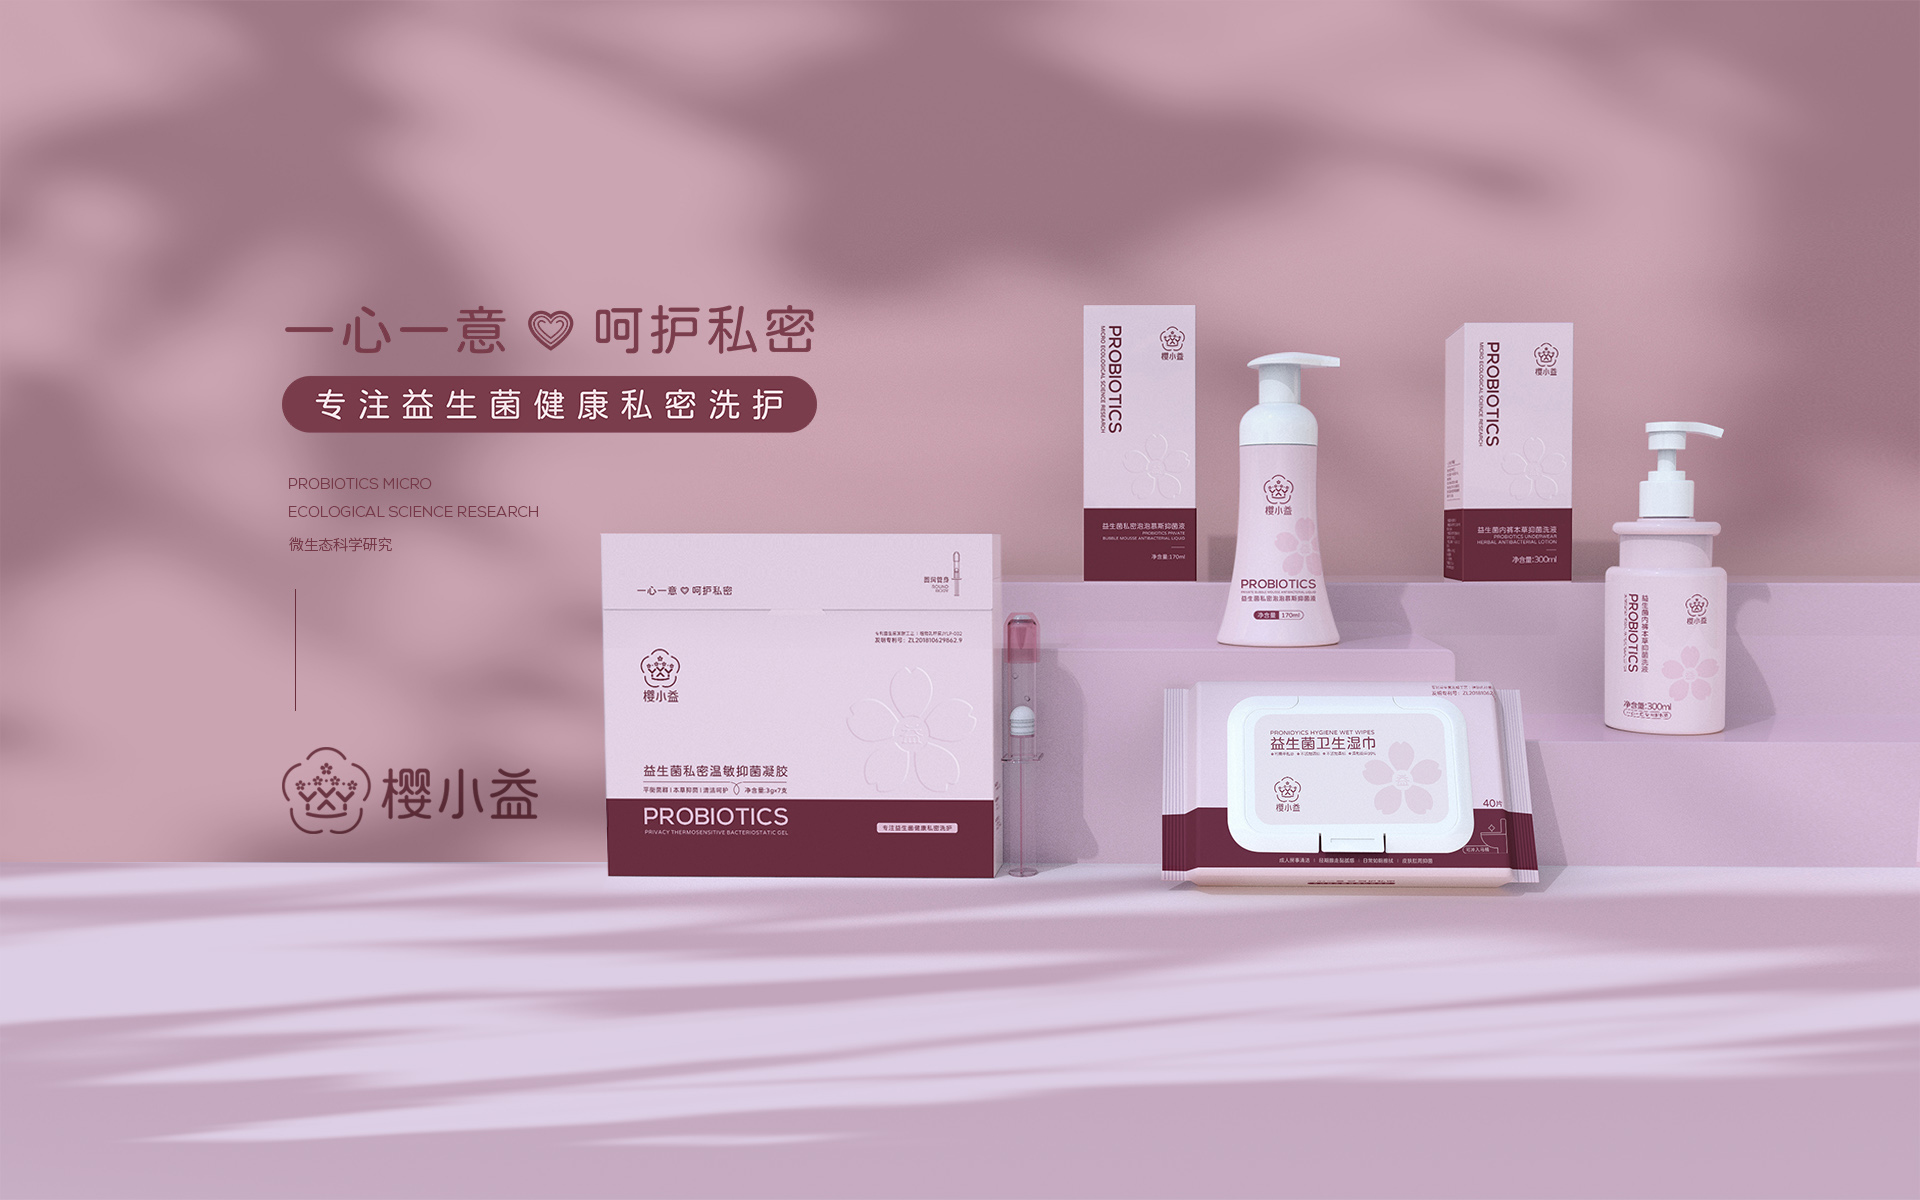 武汉医疗品牌卫生洗护品牌策划设计